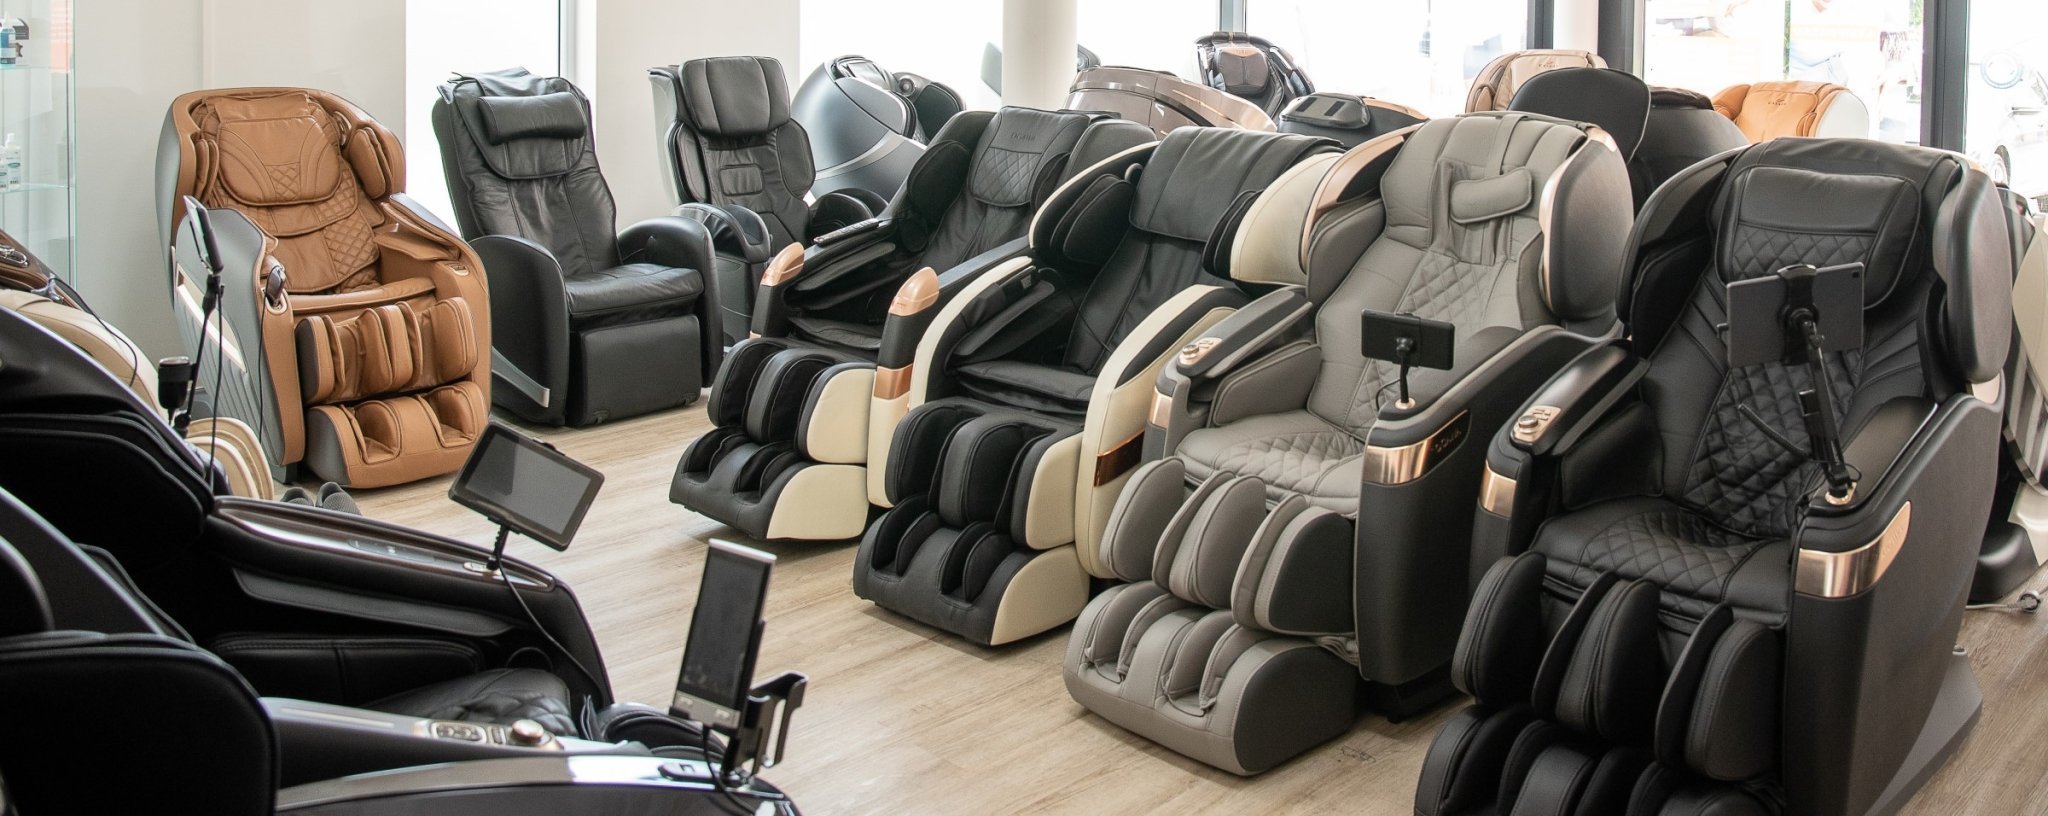 Triển lãm ghế massage - Thế giới ghế massage